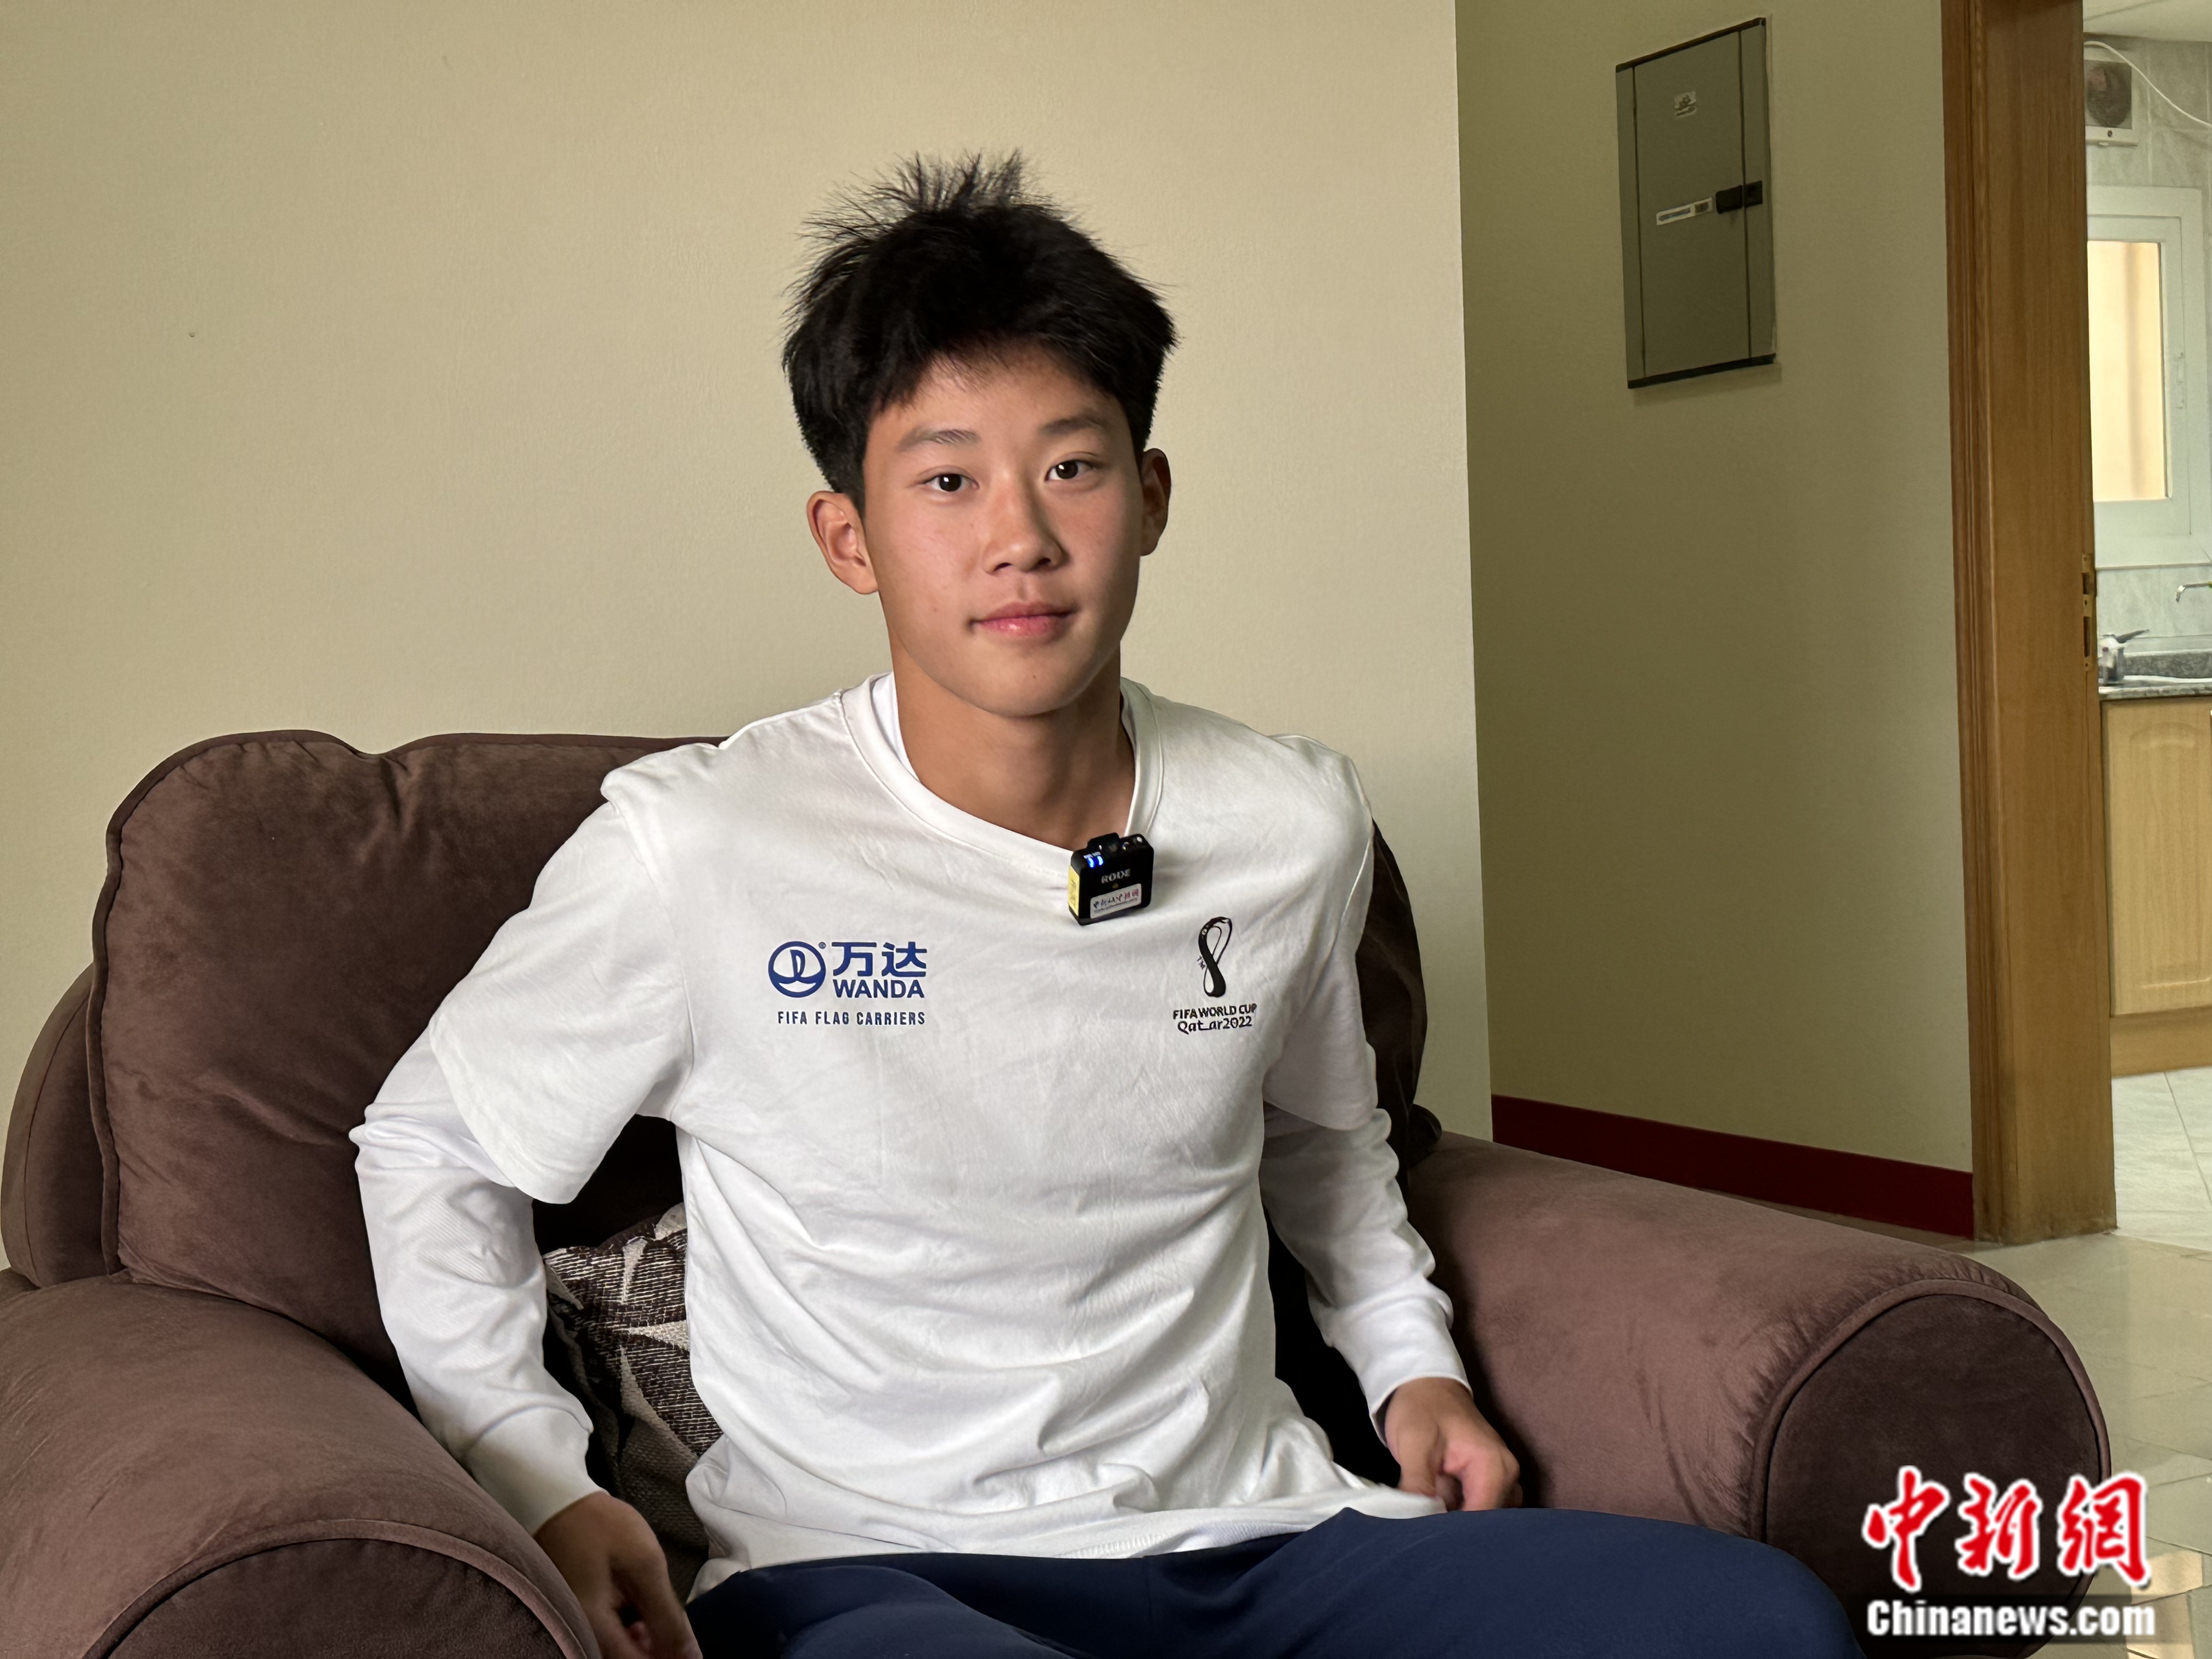 大连人职业足球俱乐部U15梯队队长杨铭锐。中新网记者 卞立群 摄